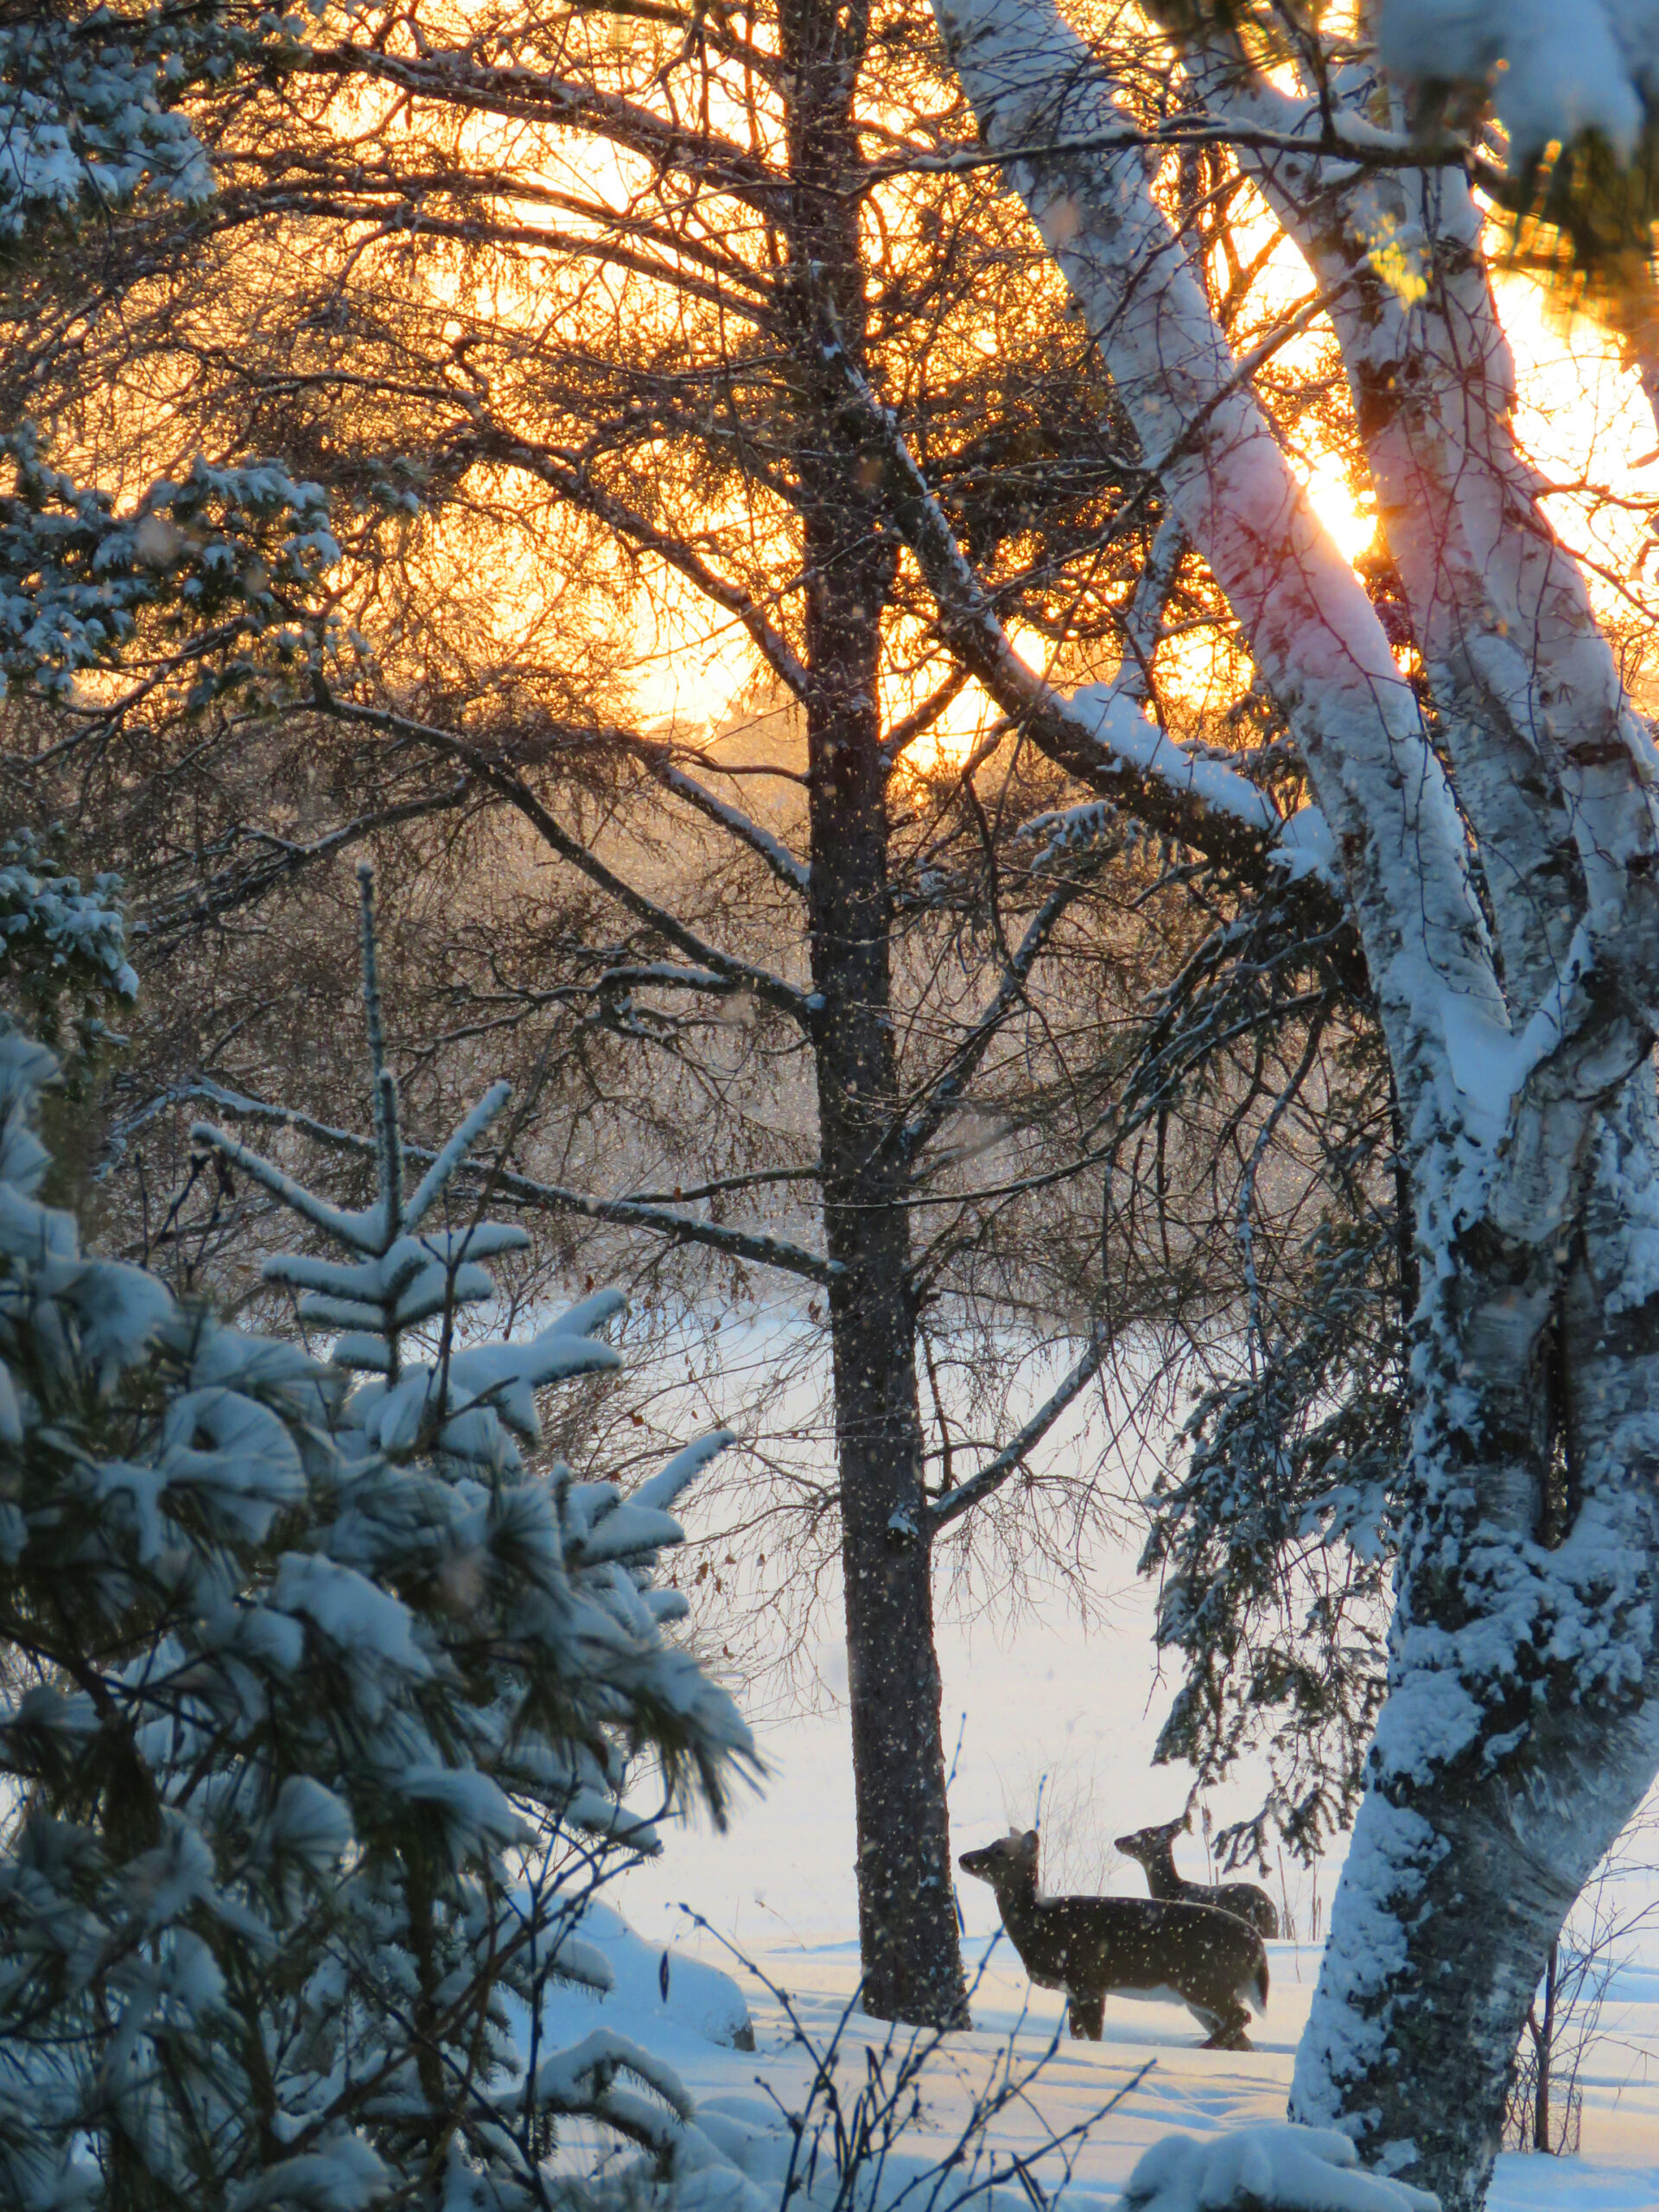 Wildlife -- Deer in Snowy Sunrise